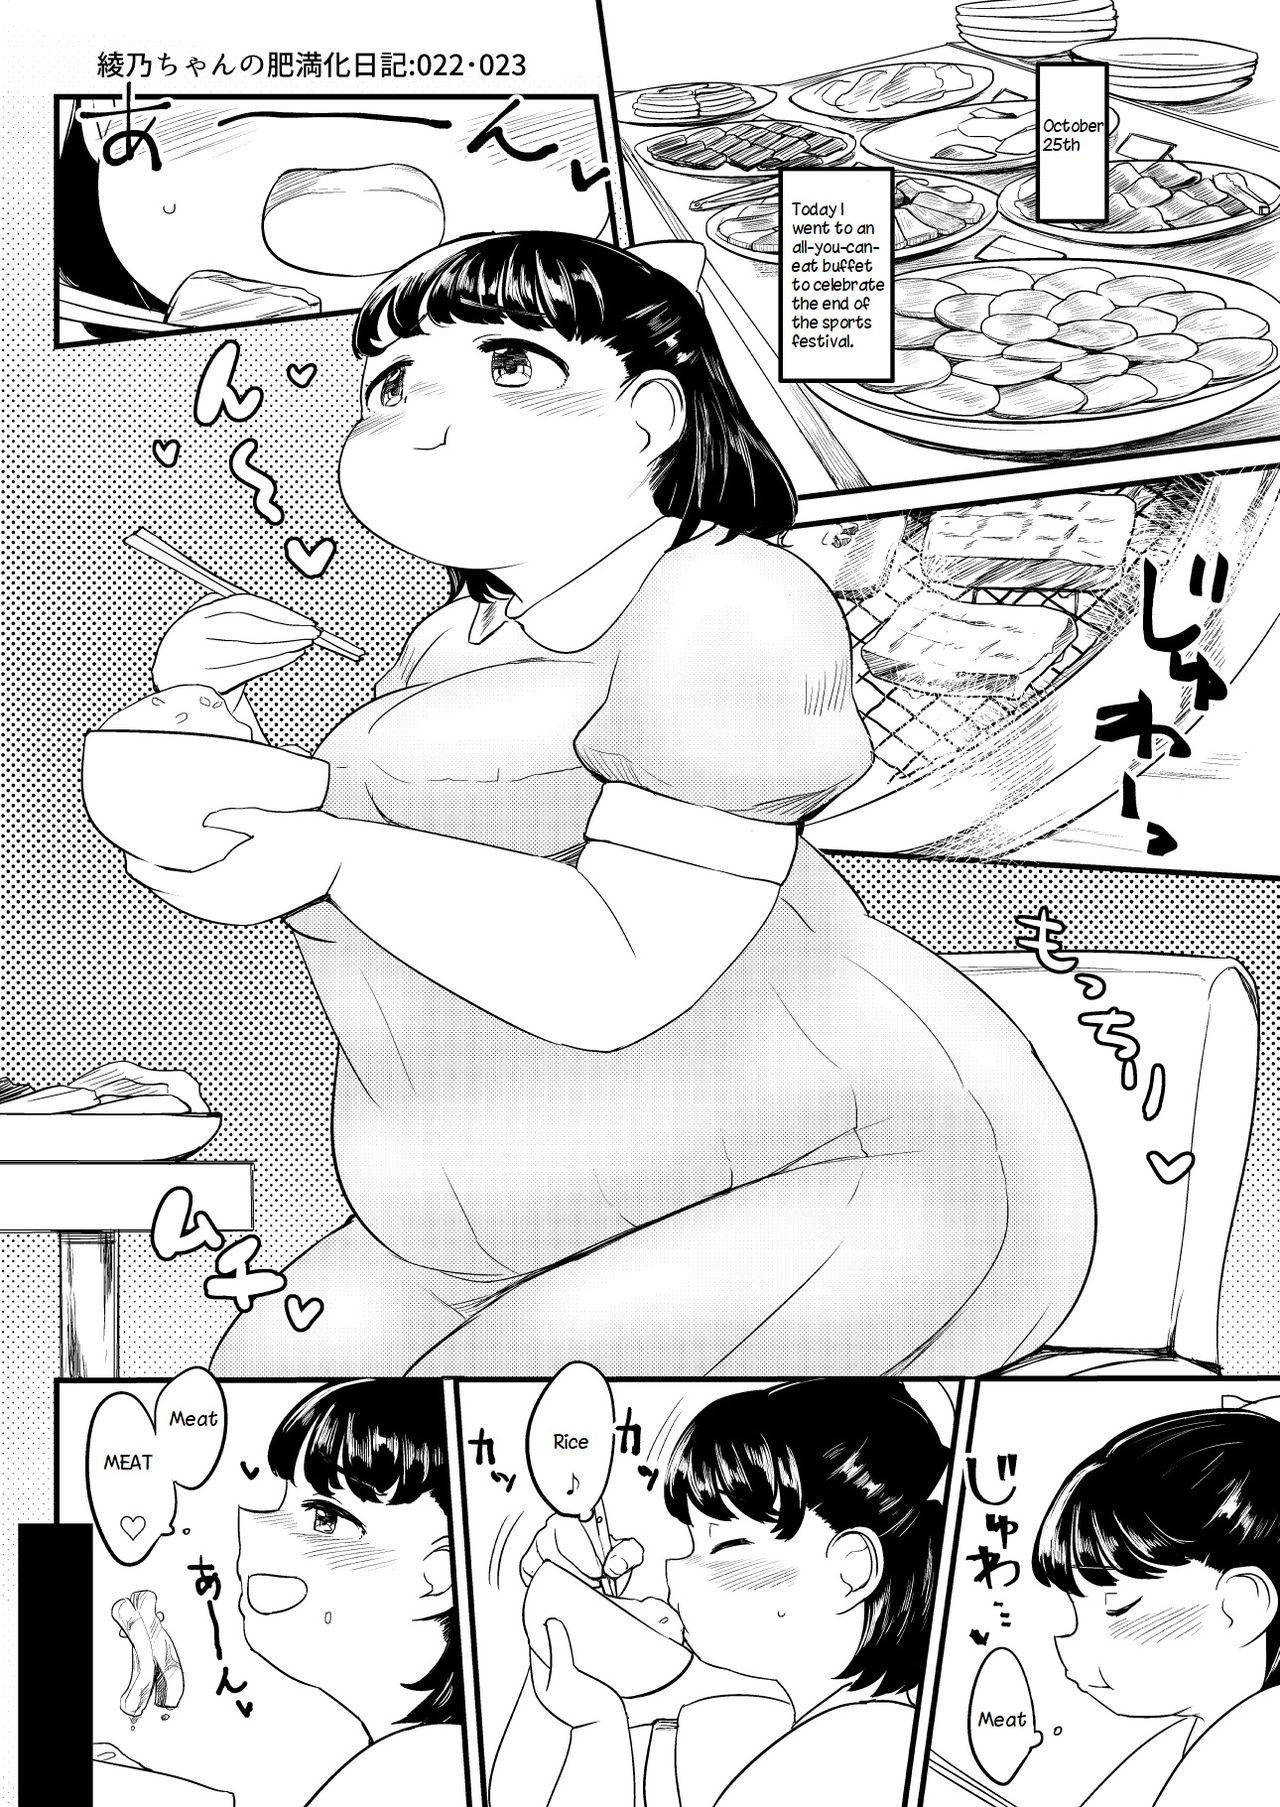 Ayano's Weight Gain Diary 22